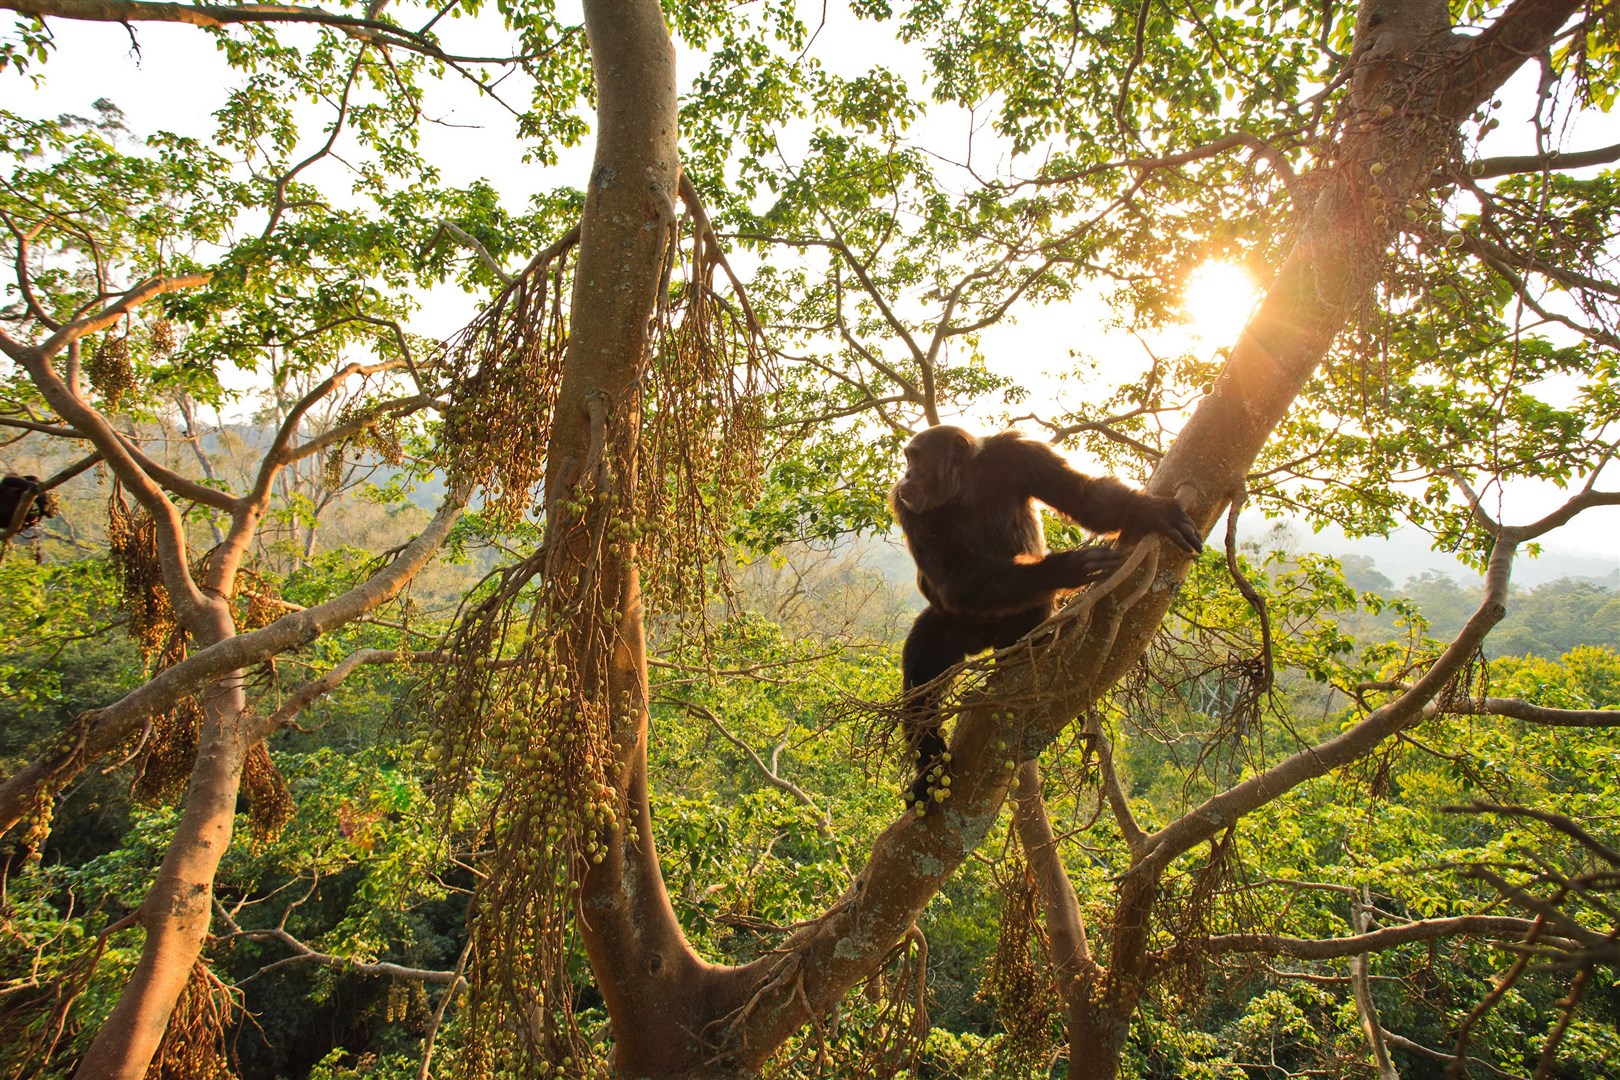 Chimpanzee at Kibale National Park, Uganda (Kibale Chimpanzee Project/PA)